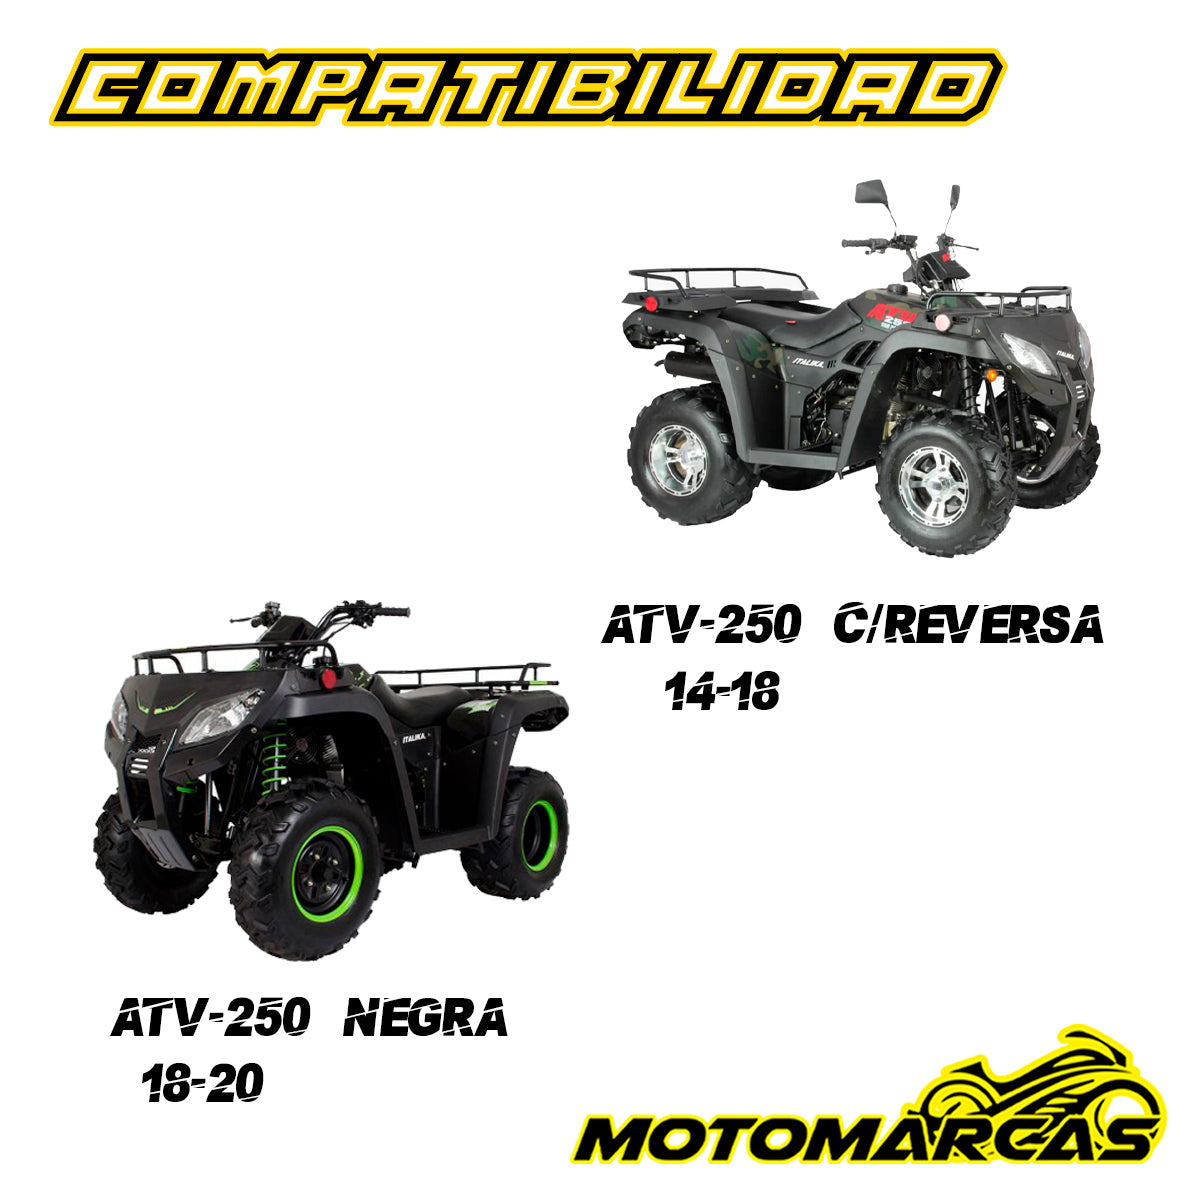 HORQUILLA DELANTERA DERECHA PARA MOTOCICLETA  ATV-250 CON  REVERSA AÑOS  14-18 COMPATIBILIDAD ATV-250 NEGRA AÑOS 18-20